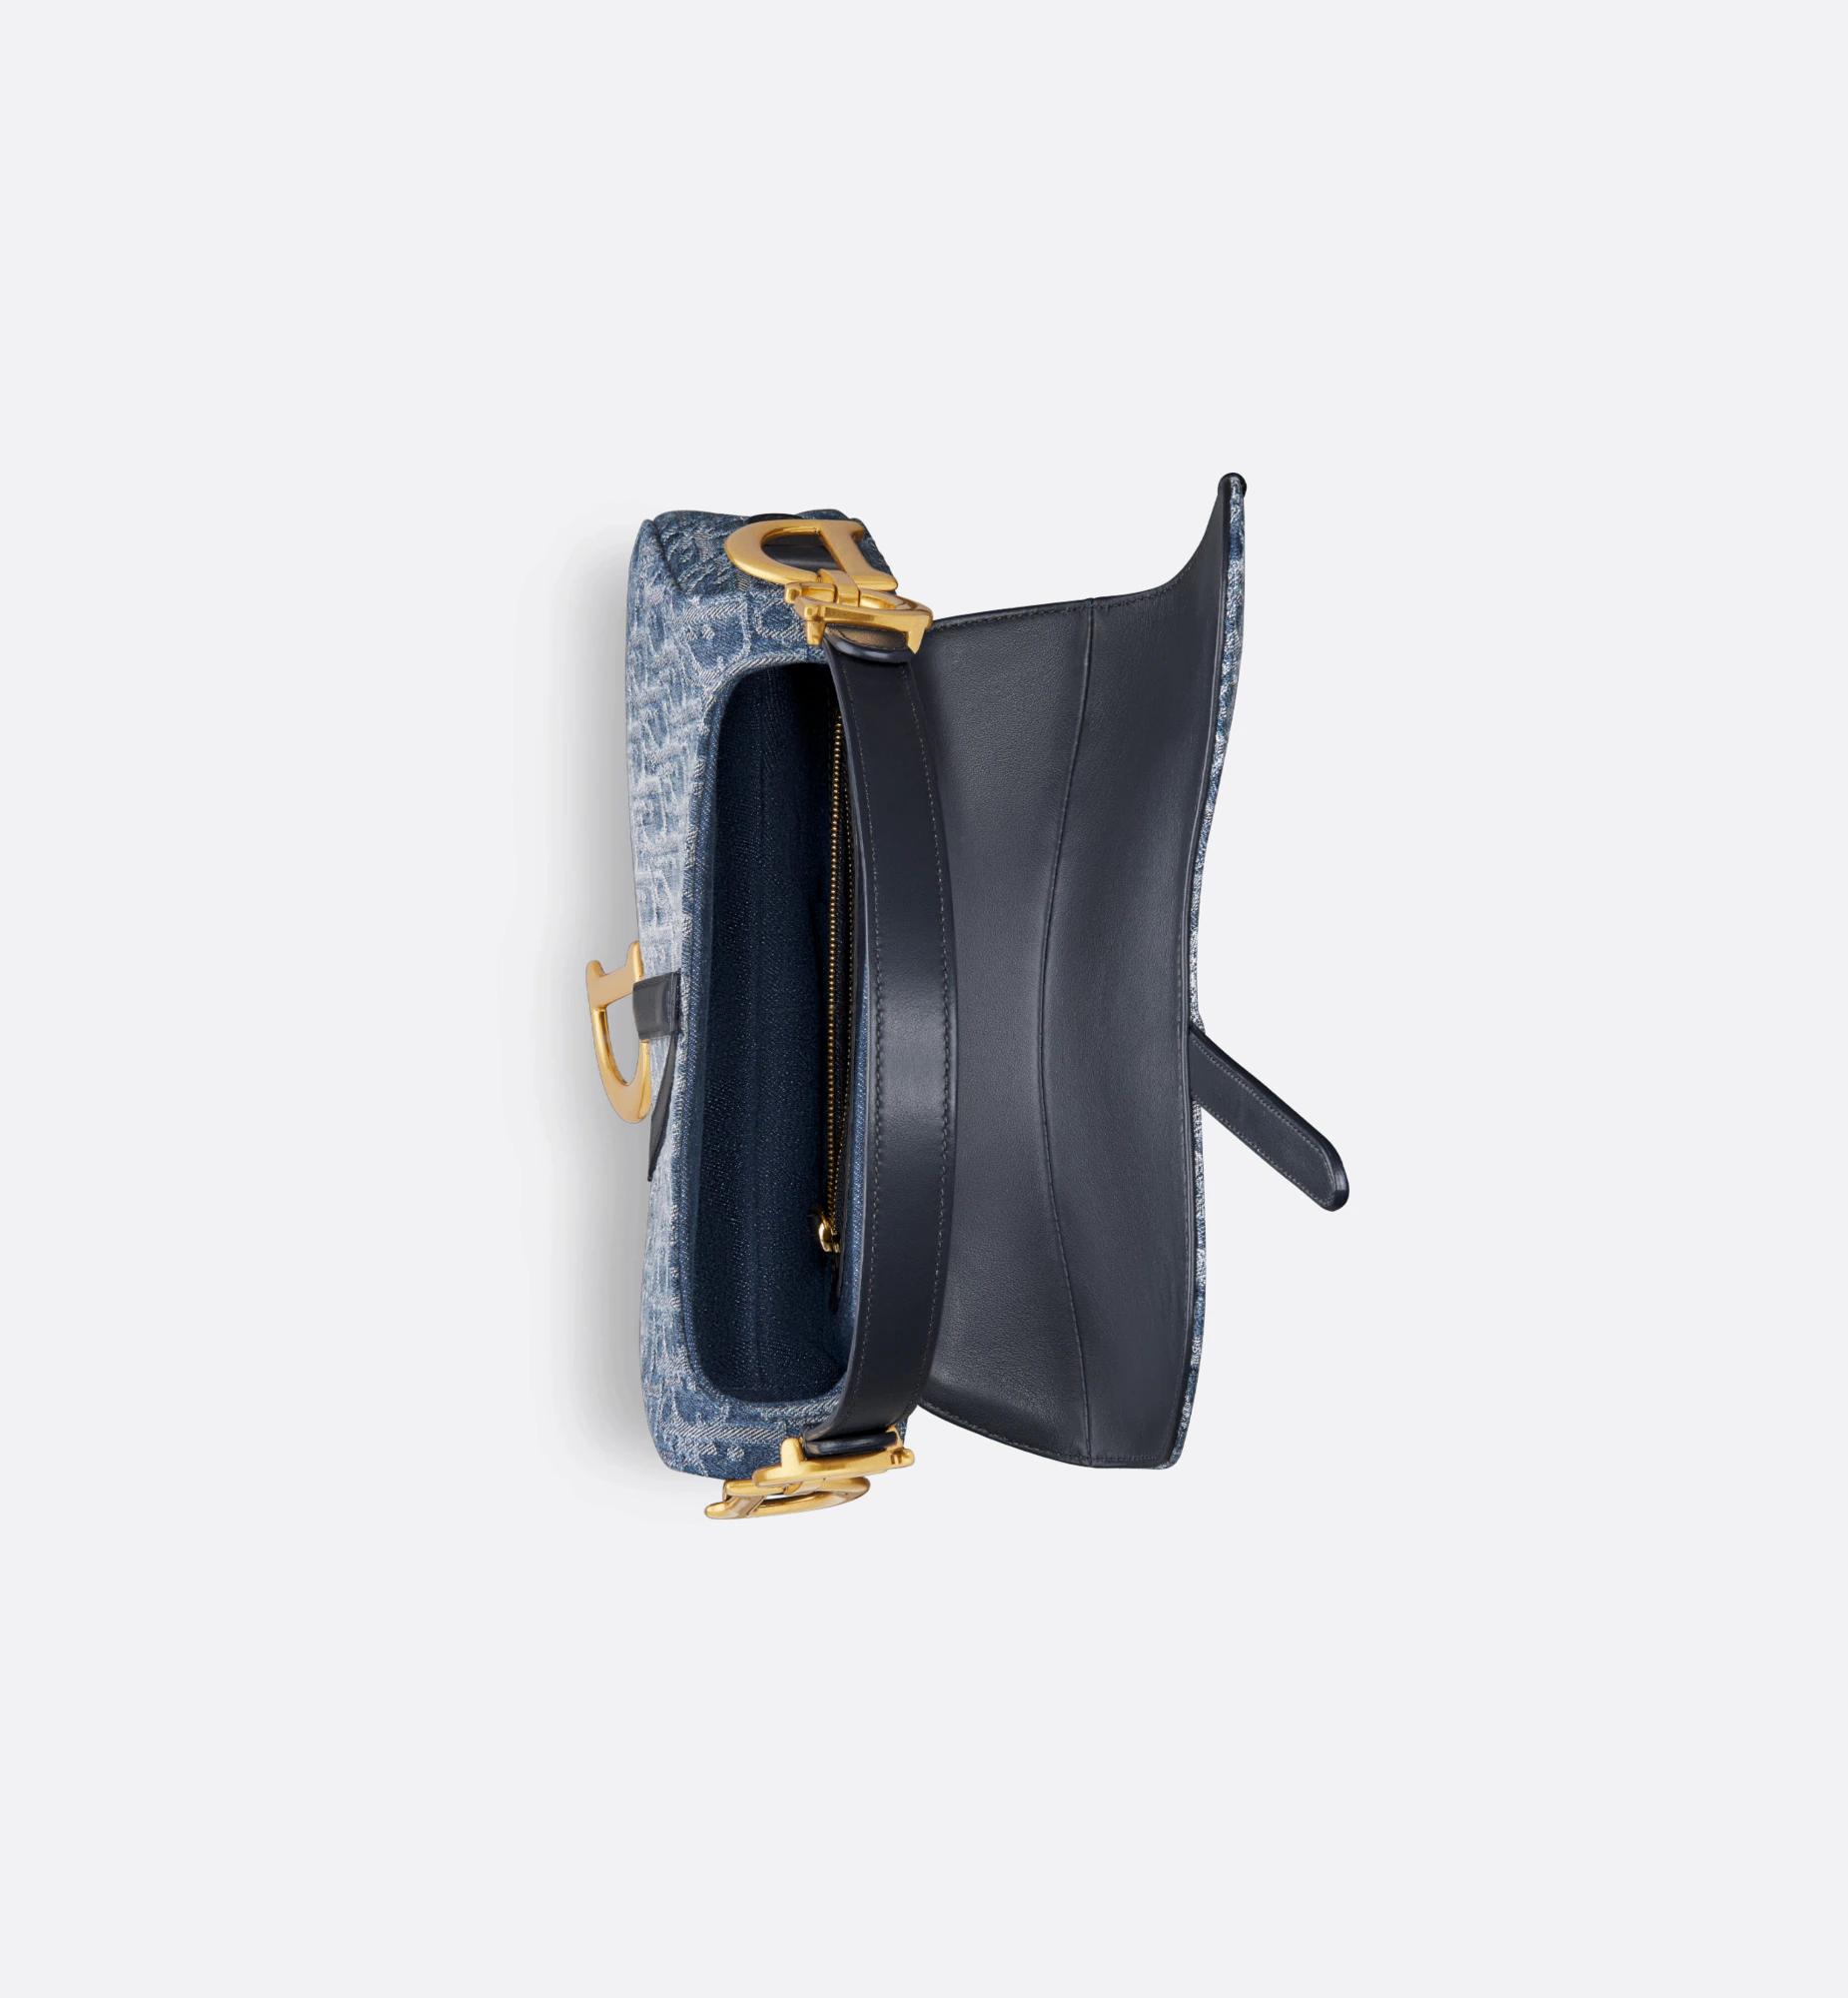 Túi Dior Saddle Bag With Strap Blue Denim Dior Oblique Jacquard Nữ Xanh Dương